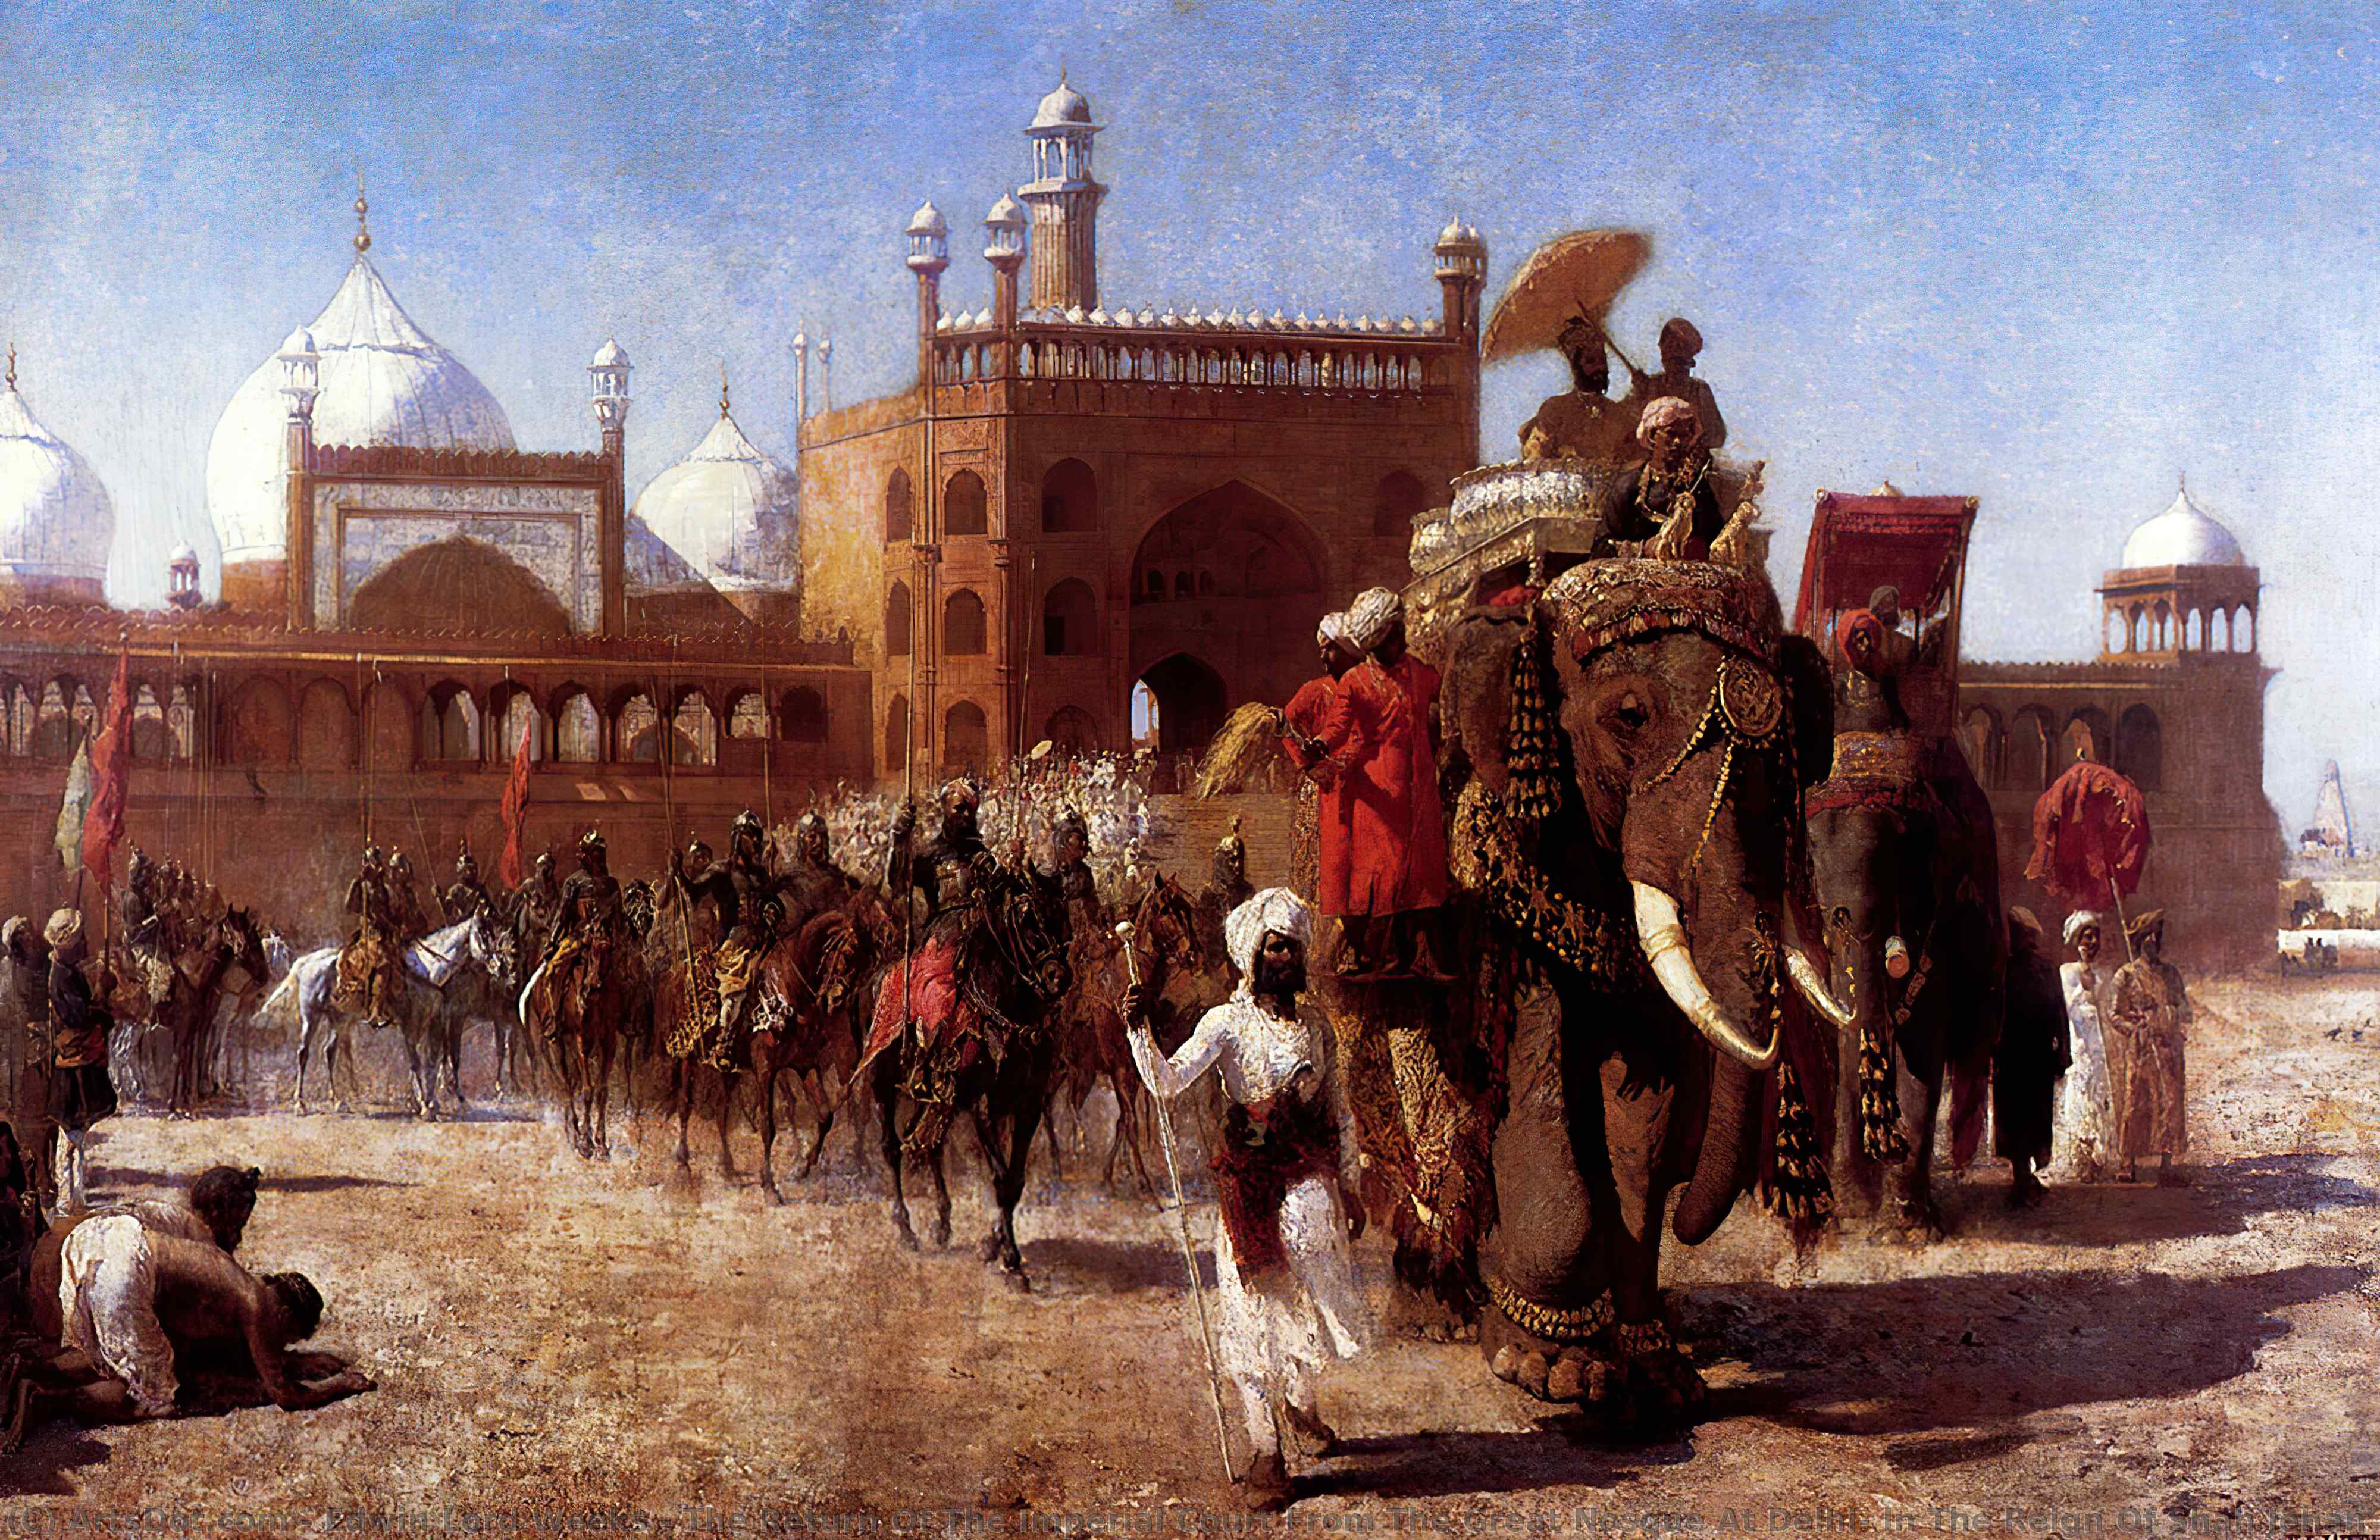 WikiOO.org – 美術百科全書 - 繪畫，作品 Edwin Lord Weeks - 回报 的  的  帝国  法庭  从  的  伟大的  清真寺  在  德里  在  的  统治  的  沙阿  查汉